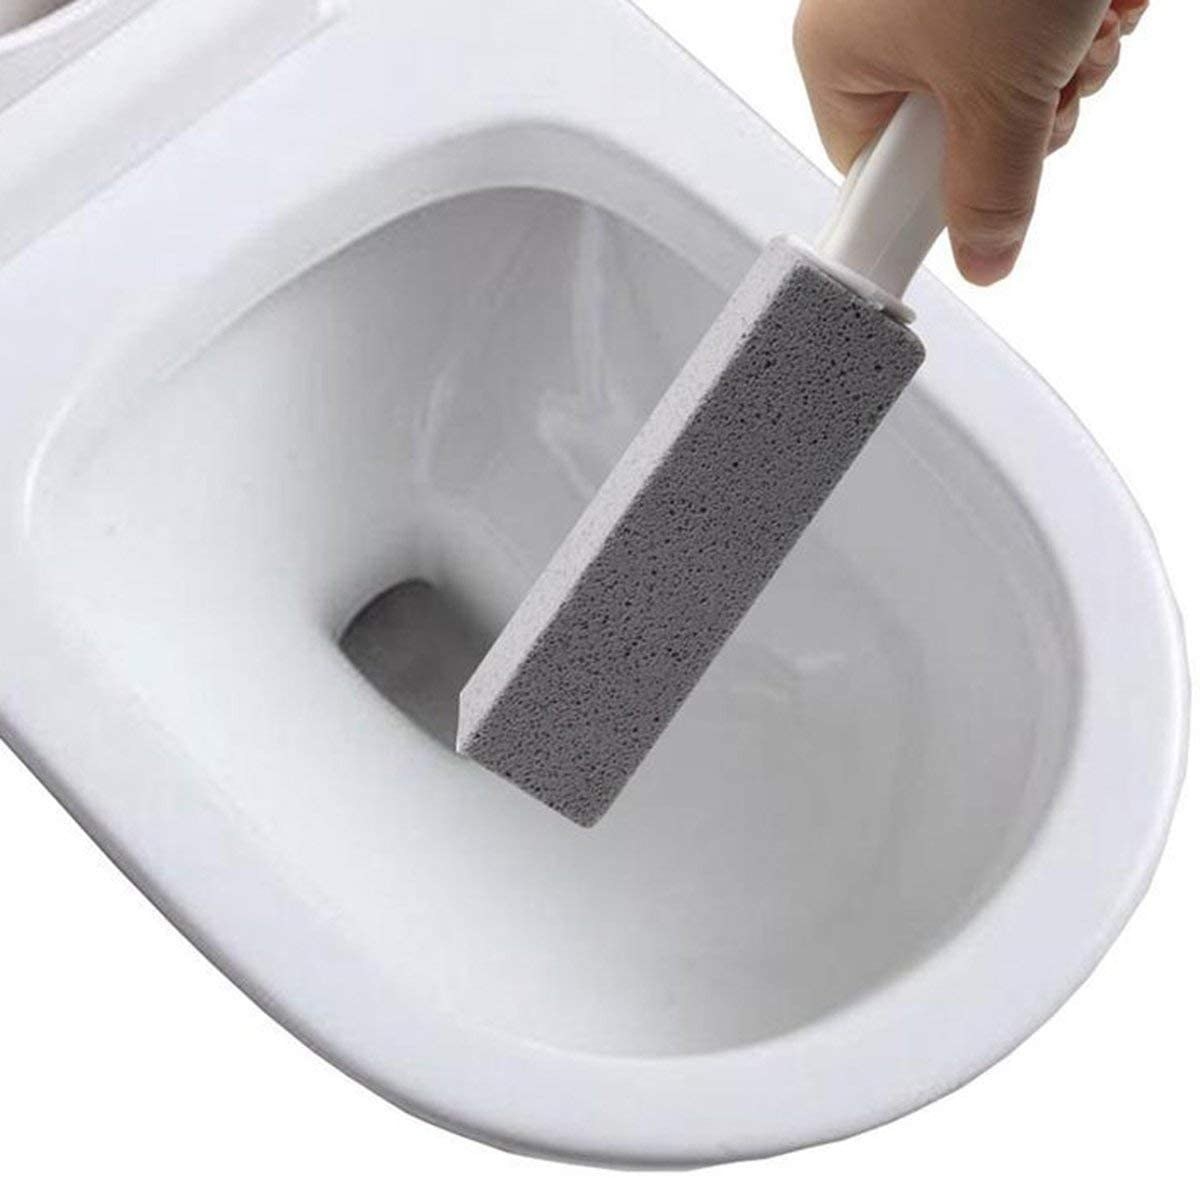 cepillo de piedra pómez para limpiar taza del baño